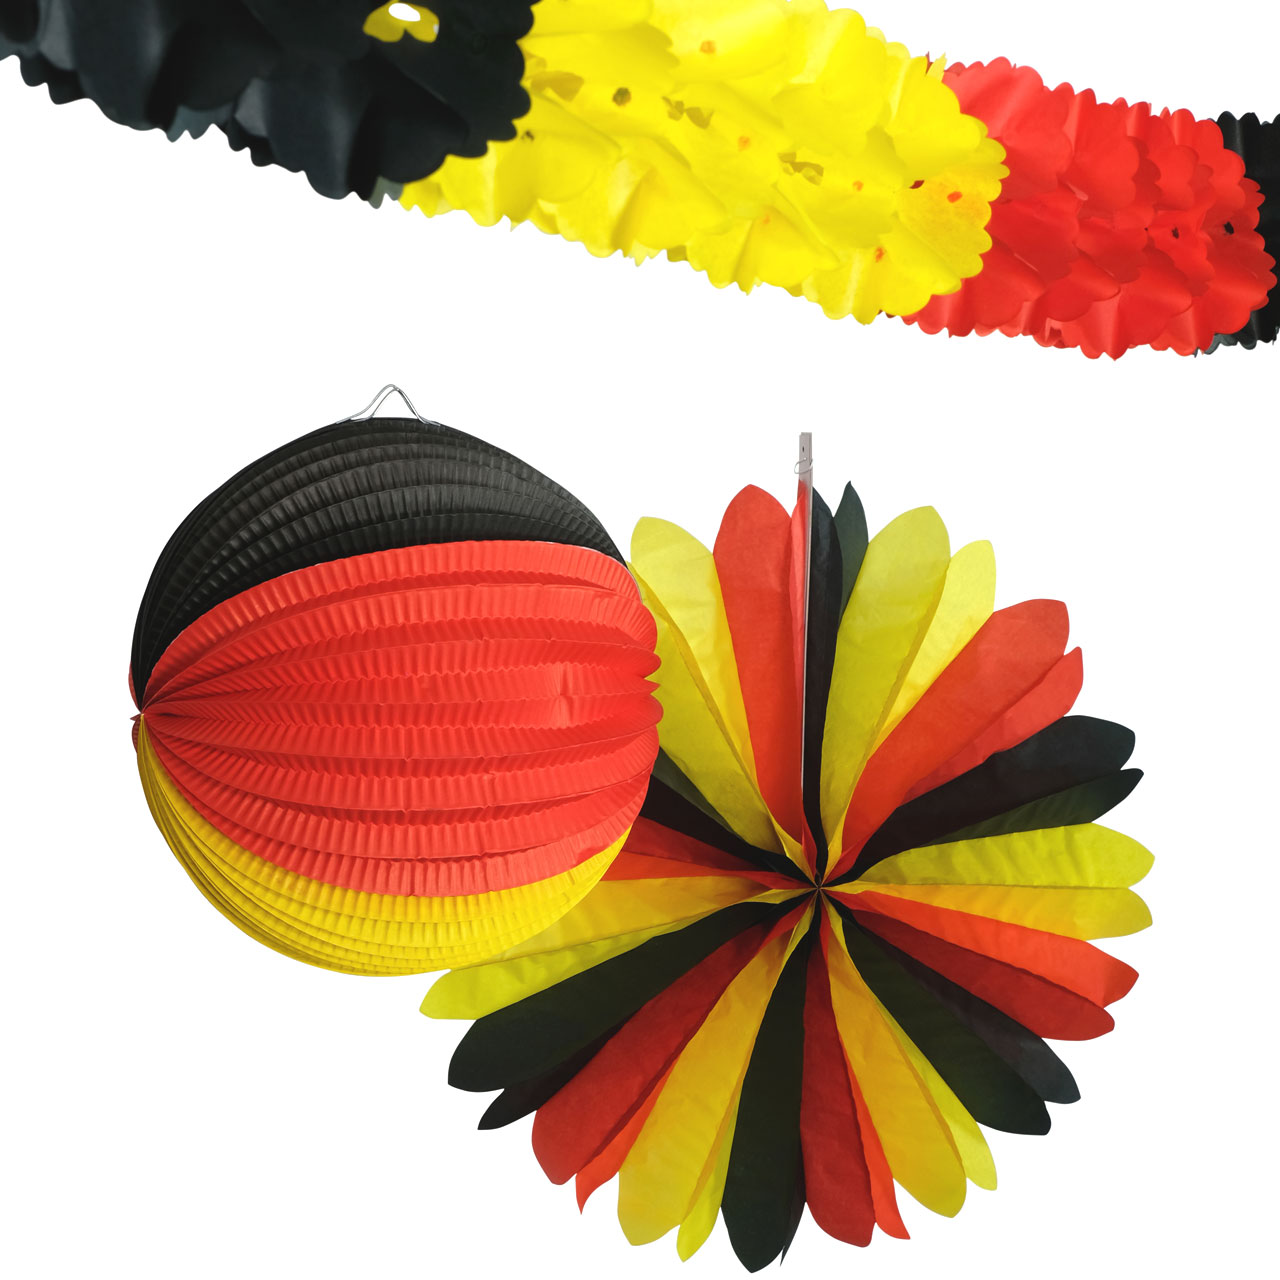 Deutschland-Fahne Fanartikel schwarz-rot-gold 14x21cm , günstige Faschings  Partydeko & Zubehör bei Karneval Megastore